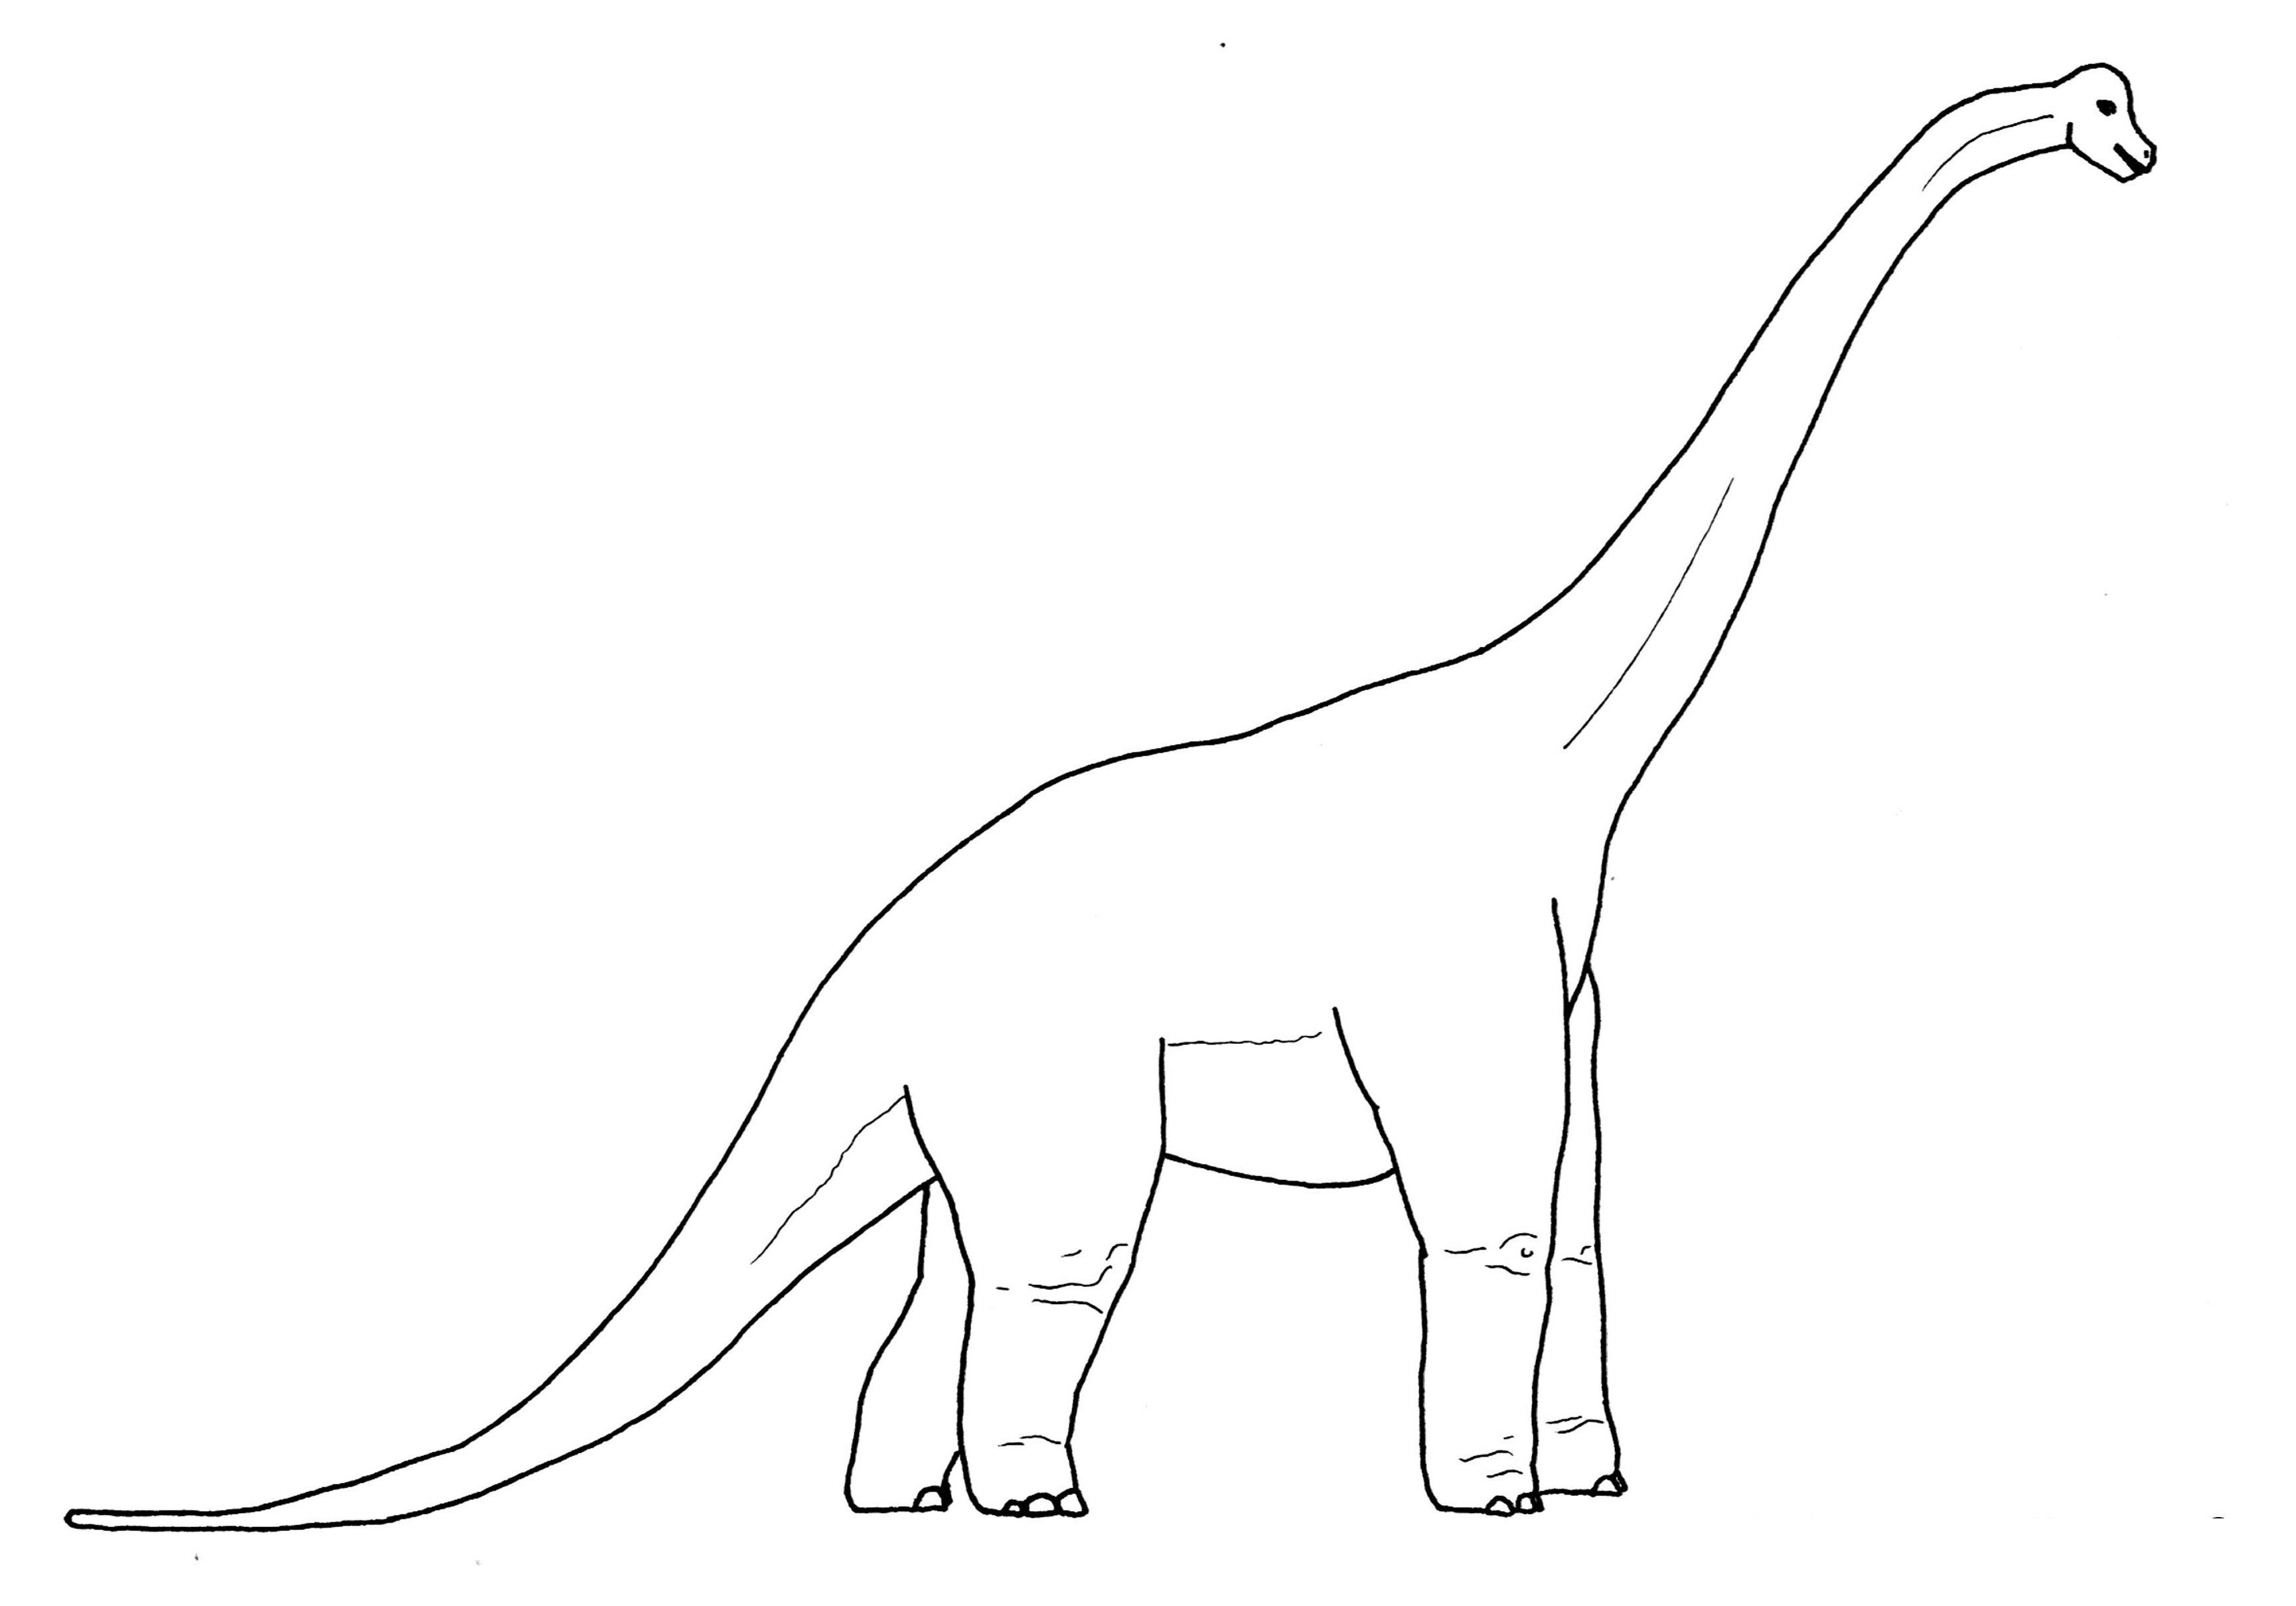 brachiosaurus coloring pages